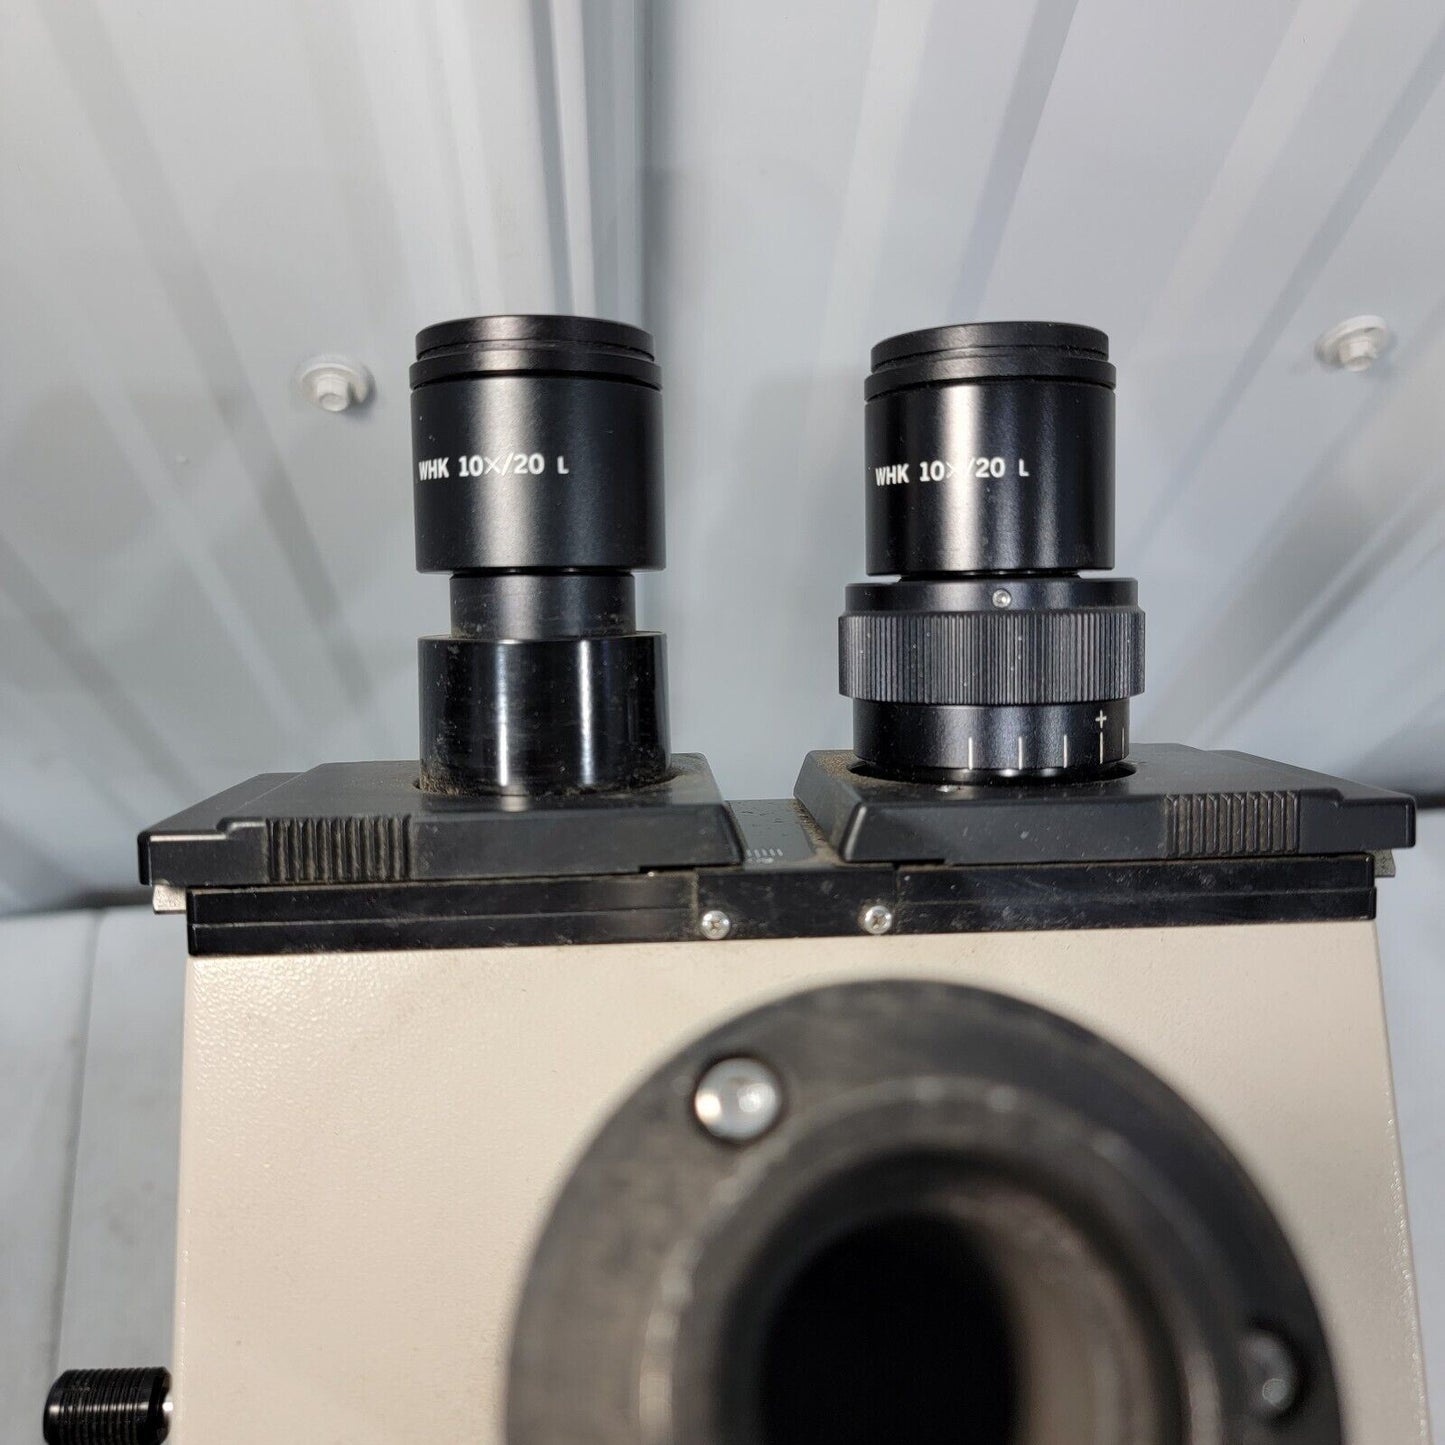 Olympus BHTU BH-2 Microscope w/ 10x/20L Eyepieces, 4x 10x 20x 100x  Objectives